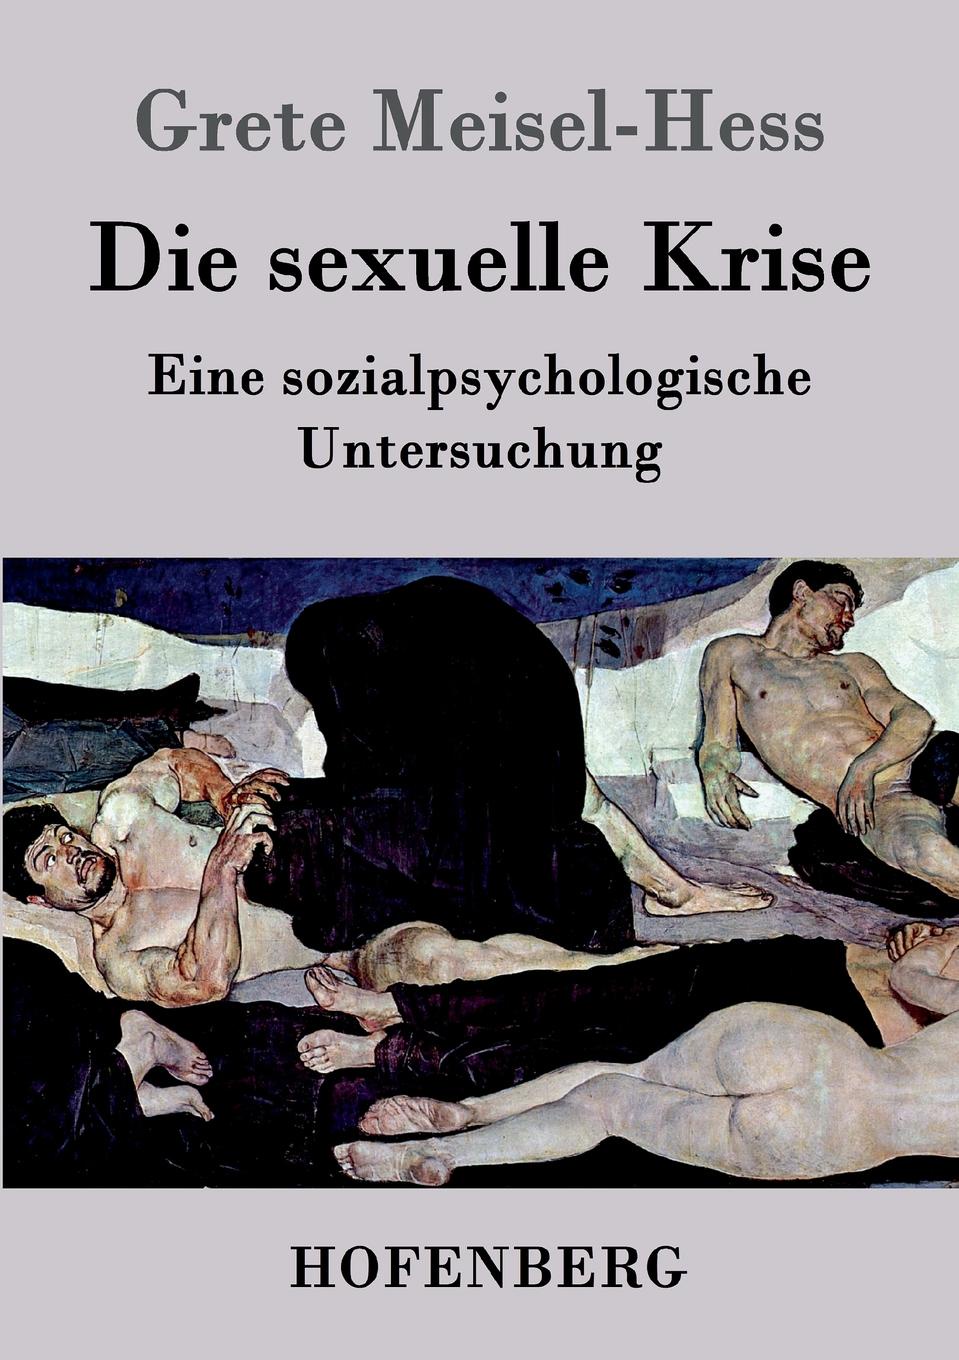 Grete Meisel-Hess Die sexuelle Krise